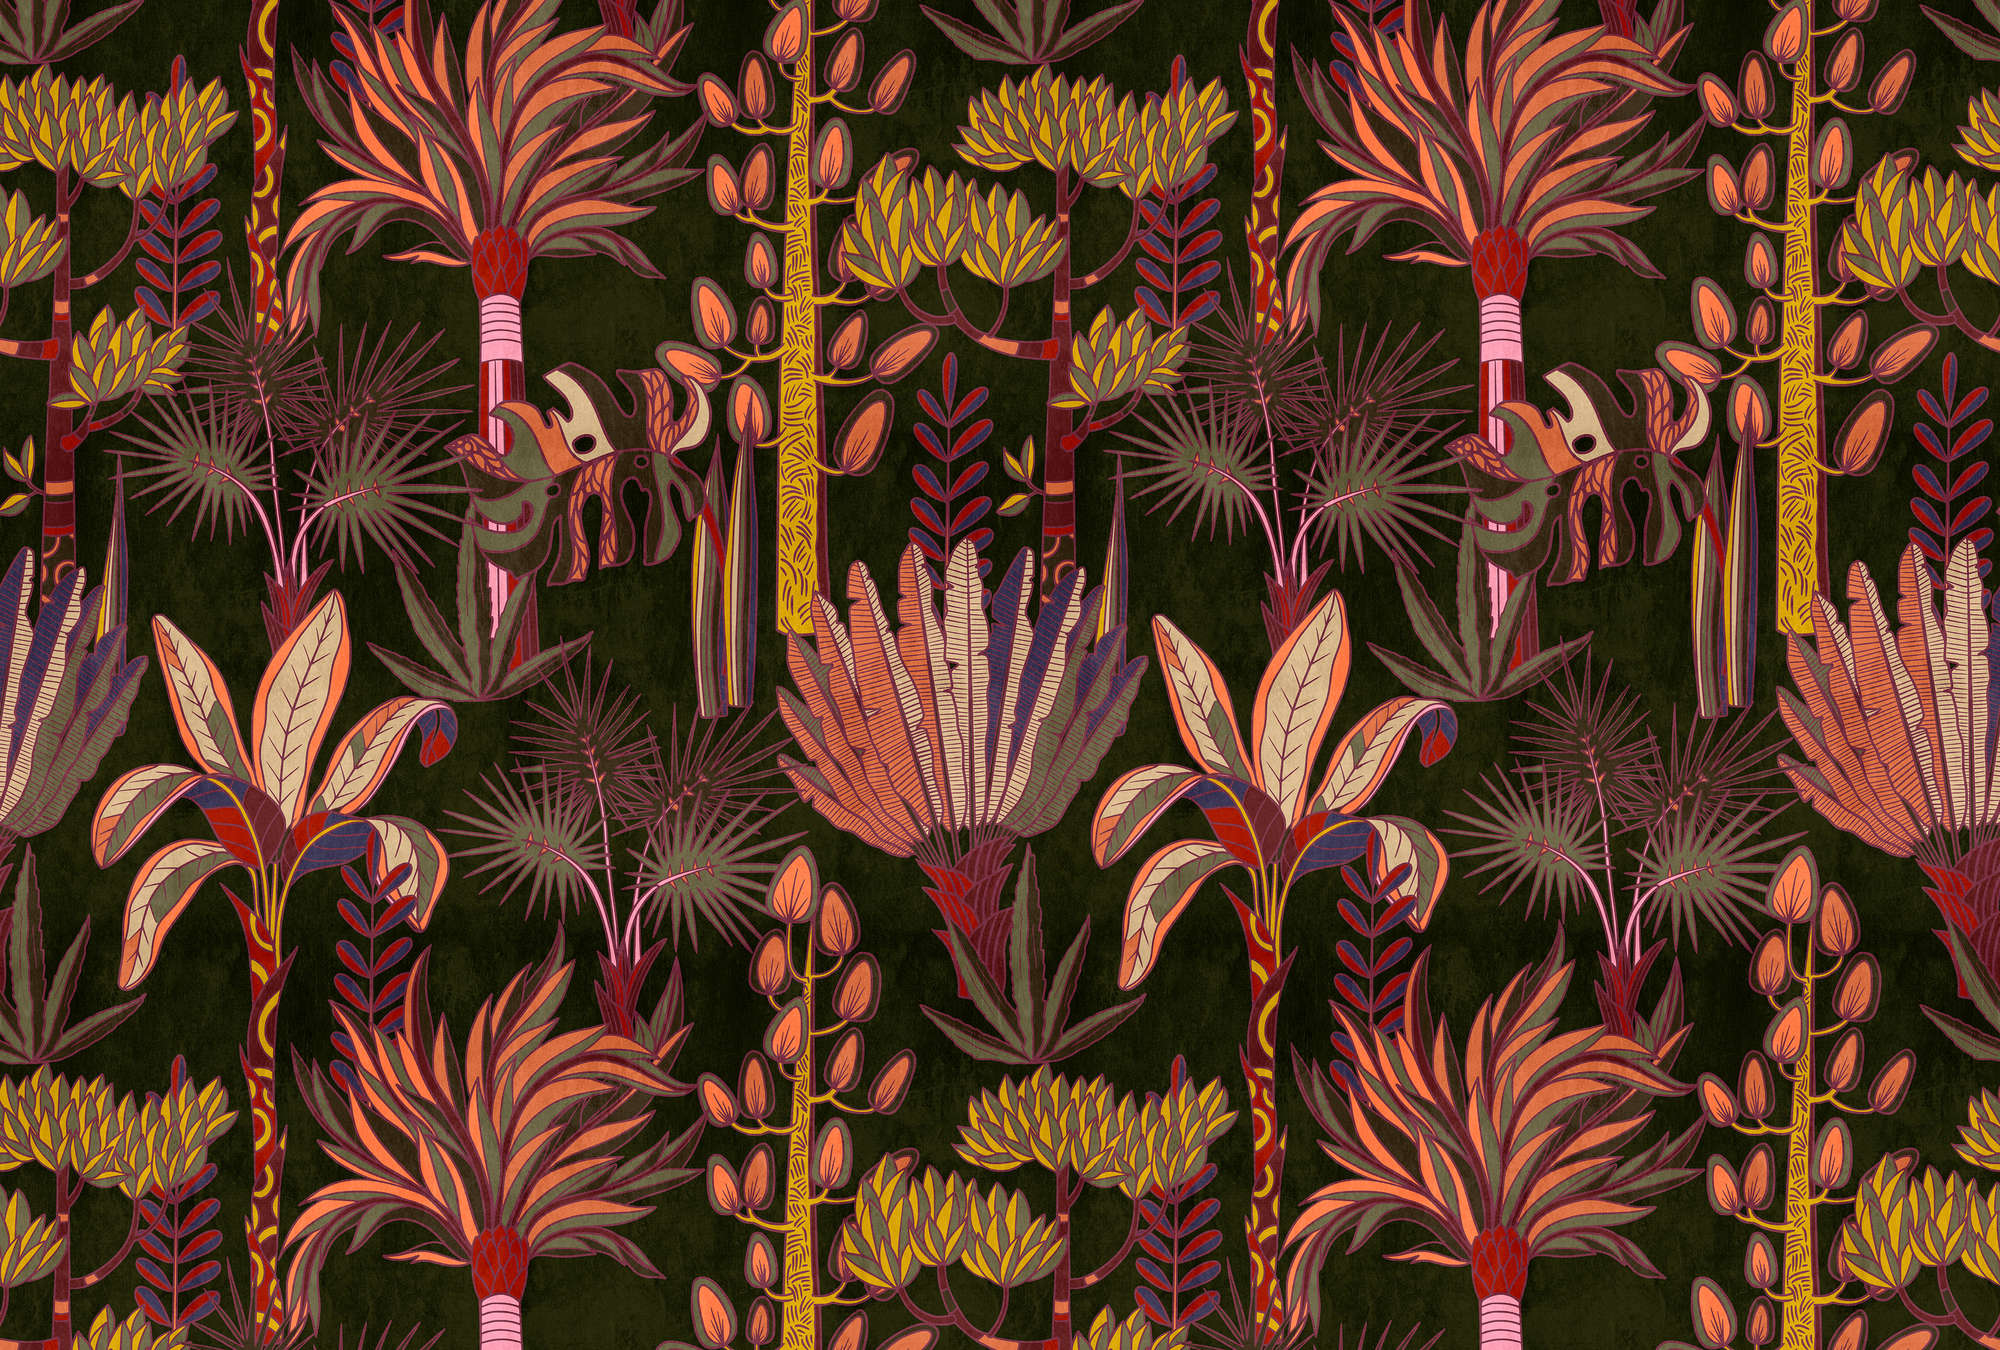             Lagos 1 - murale di palme in stile grafico colorato in look tessile
        